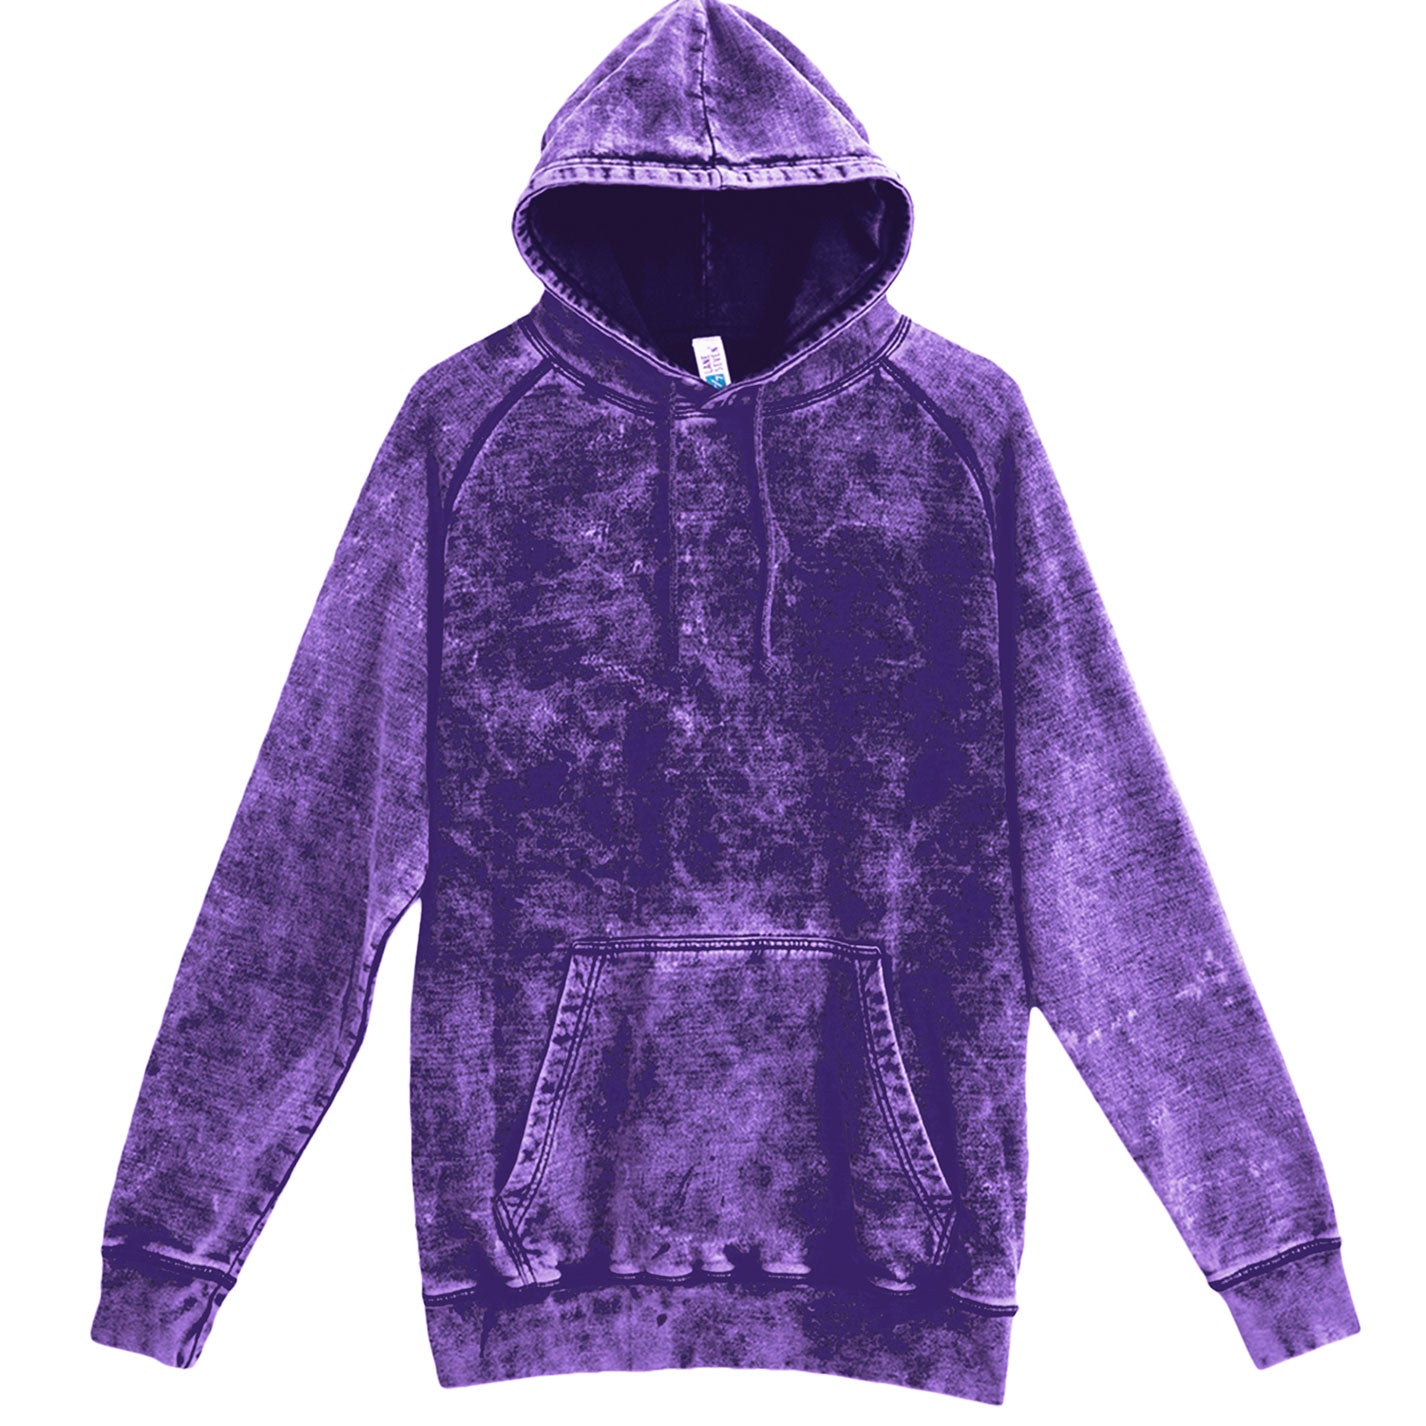 custom design hoodie no minimum your design or logo purple